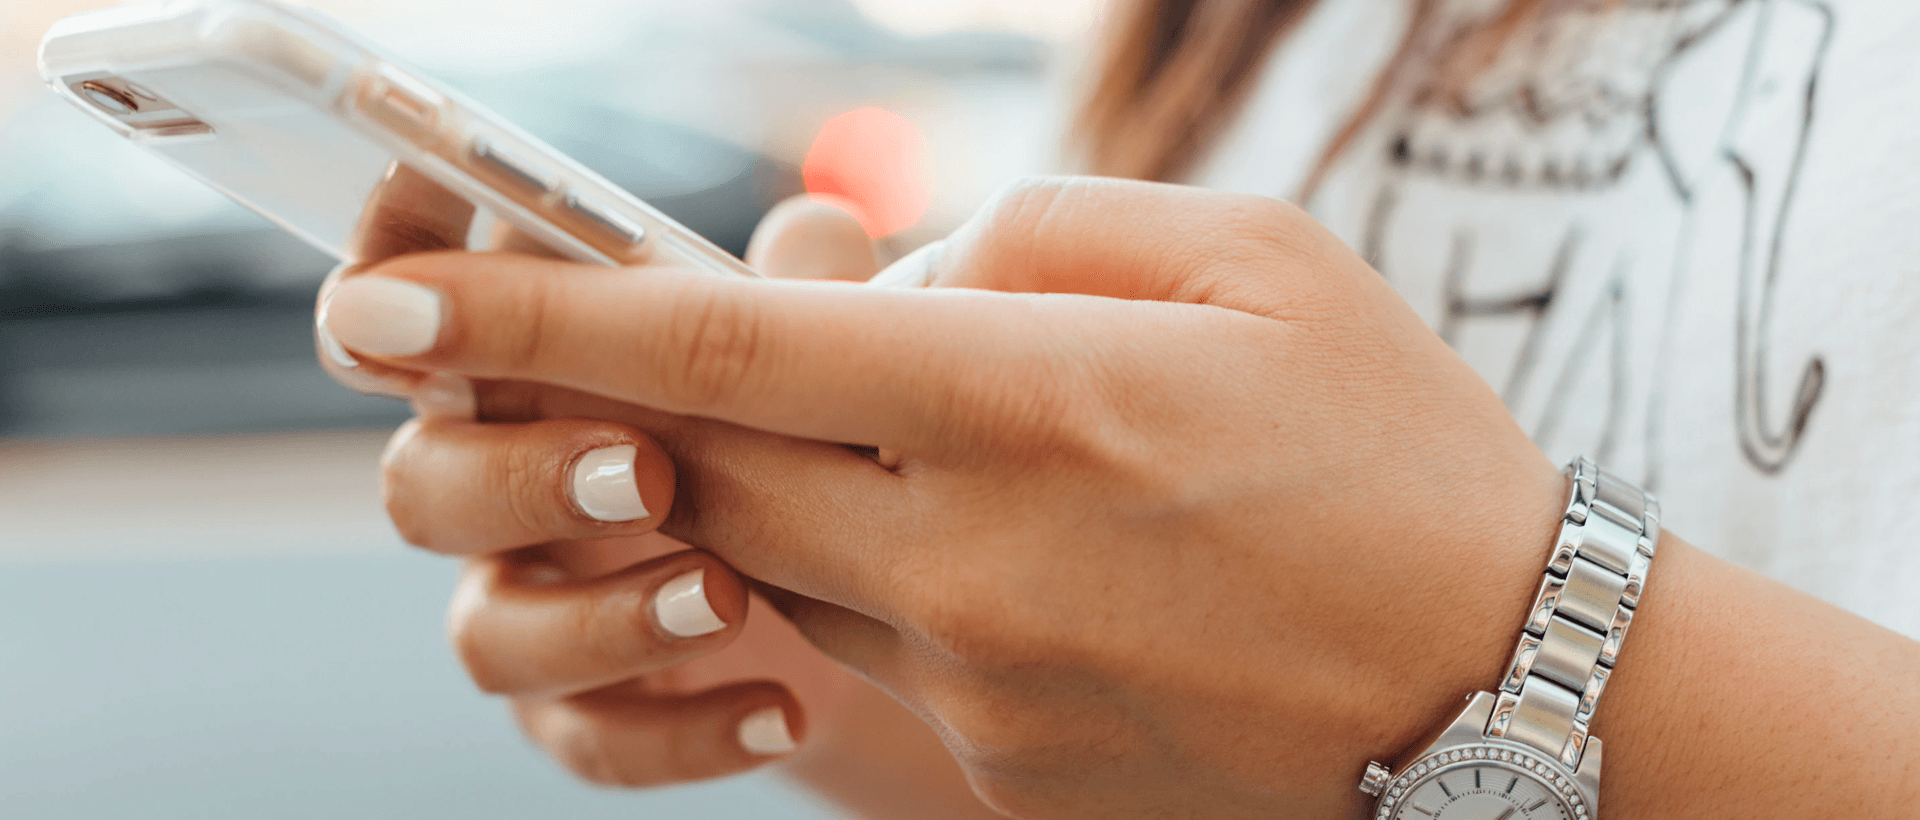 Frauenhände mit Handy sinnbildlich für E-Commerce Shops auf Mobile